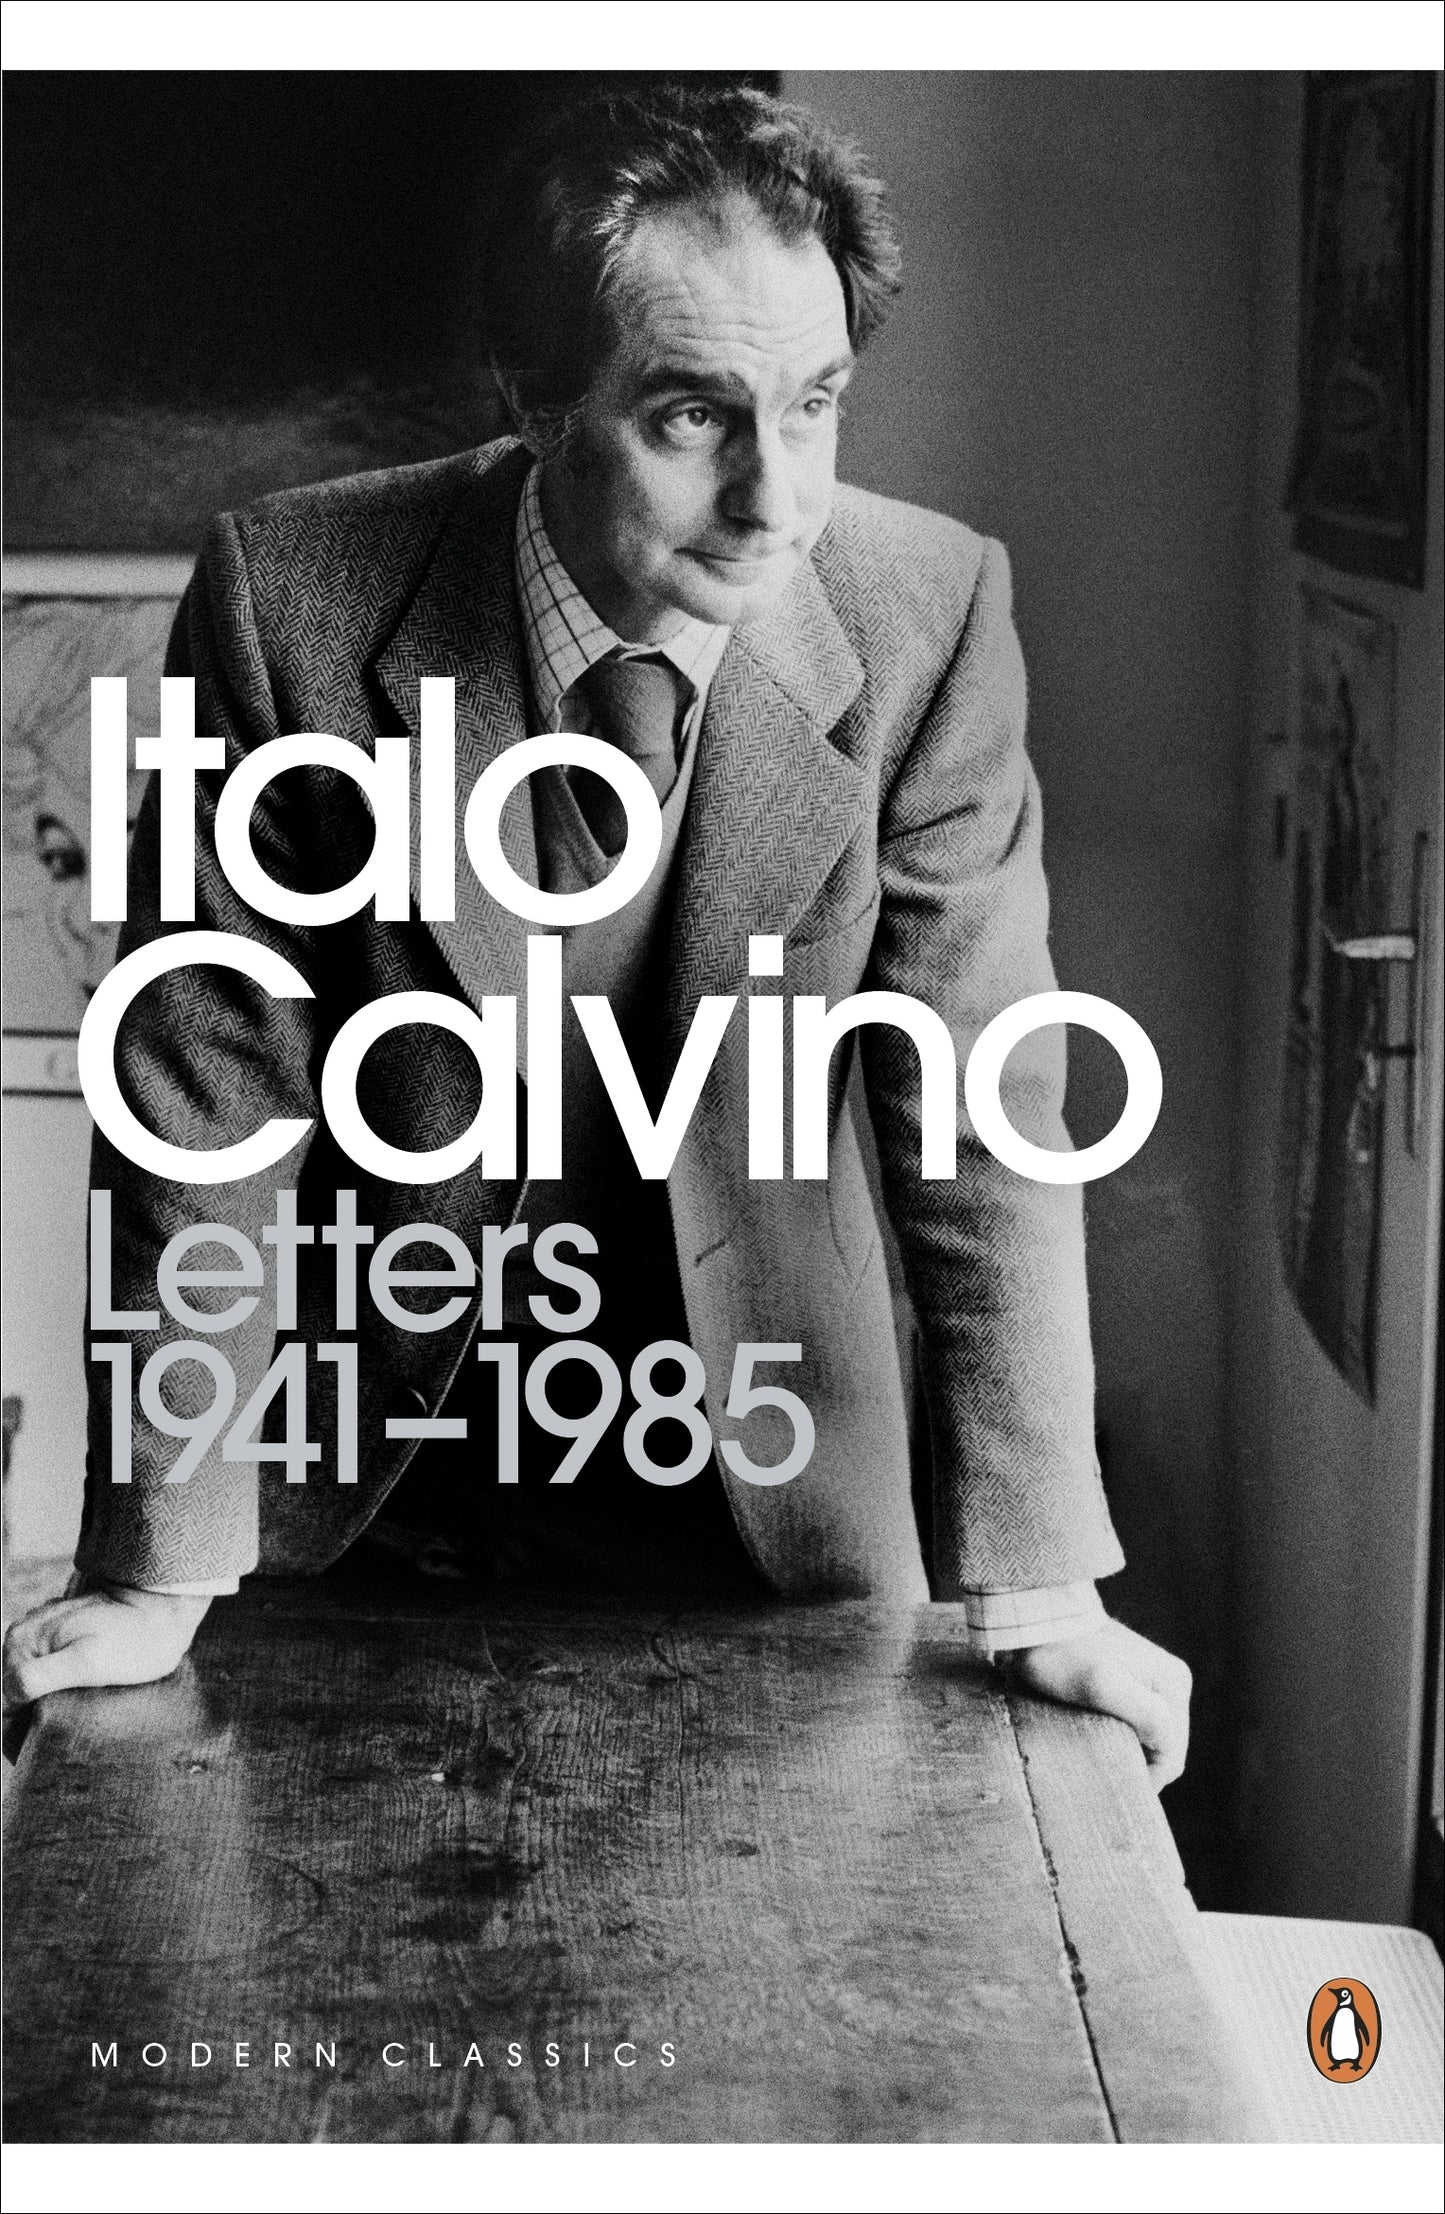 Letters, 1941-1985: Italo Calvino